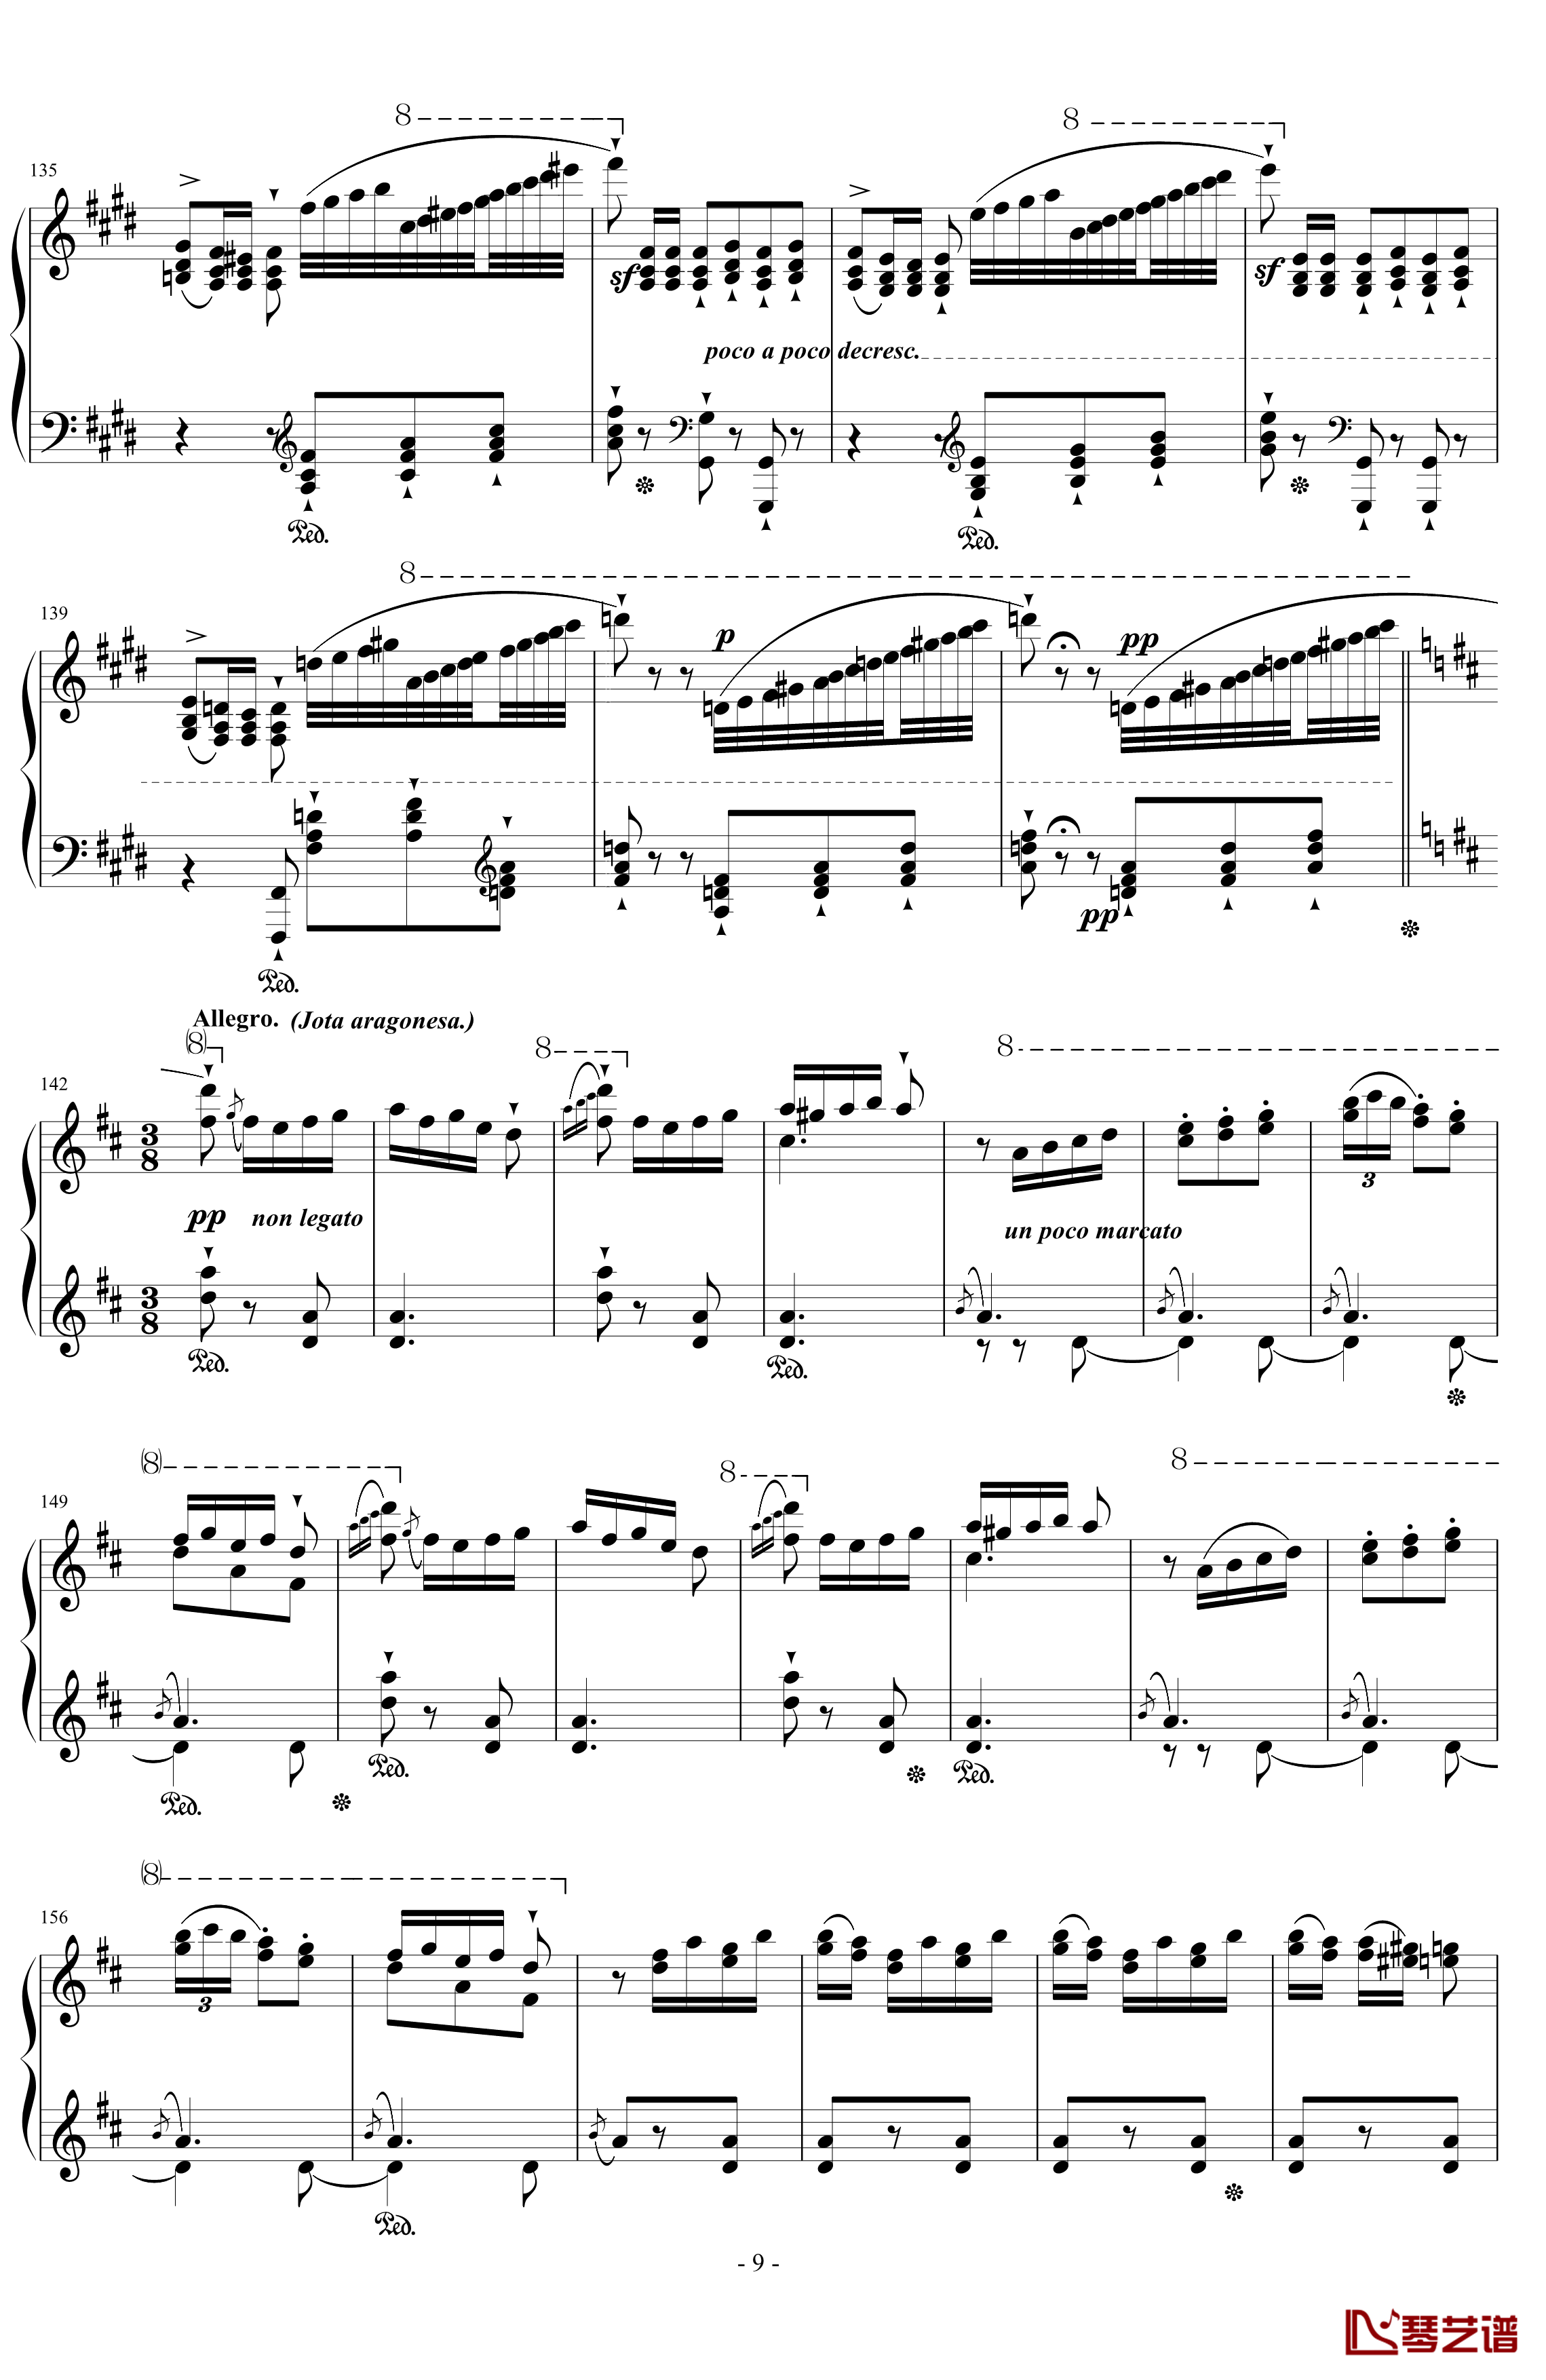 西班牙狂想曲钢琴谱-难度极高的炫技大作-李斯特9